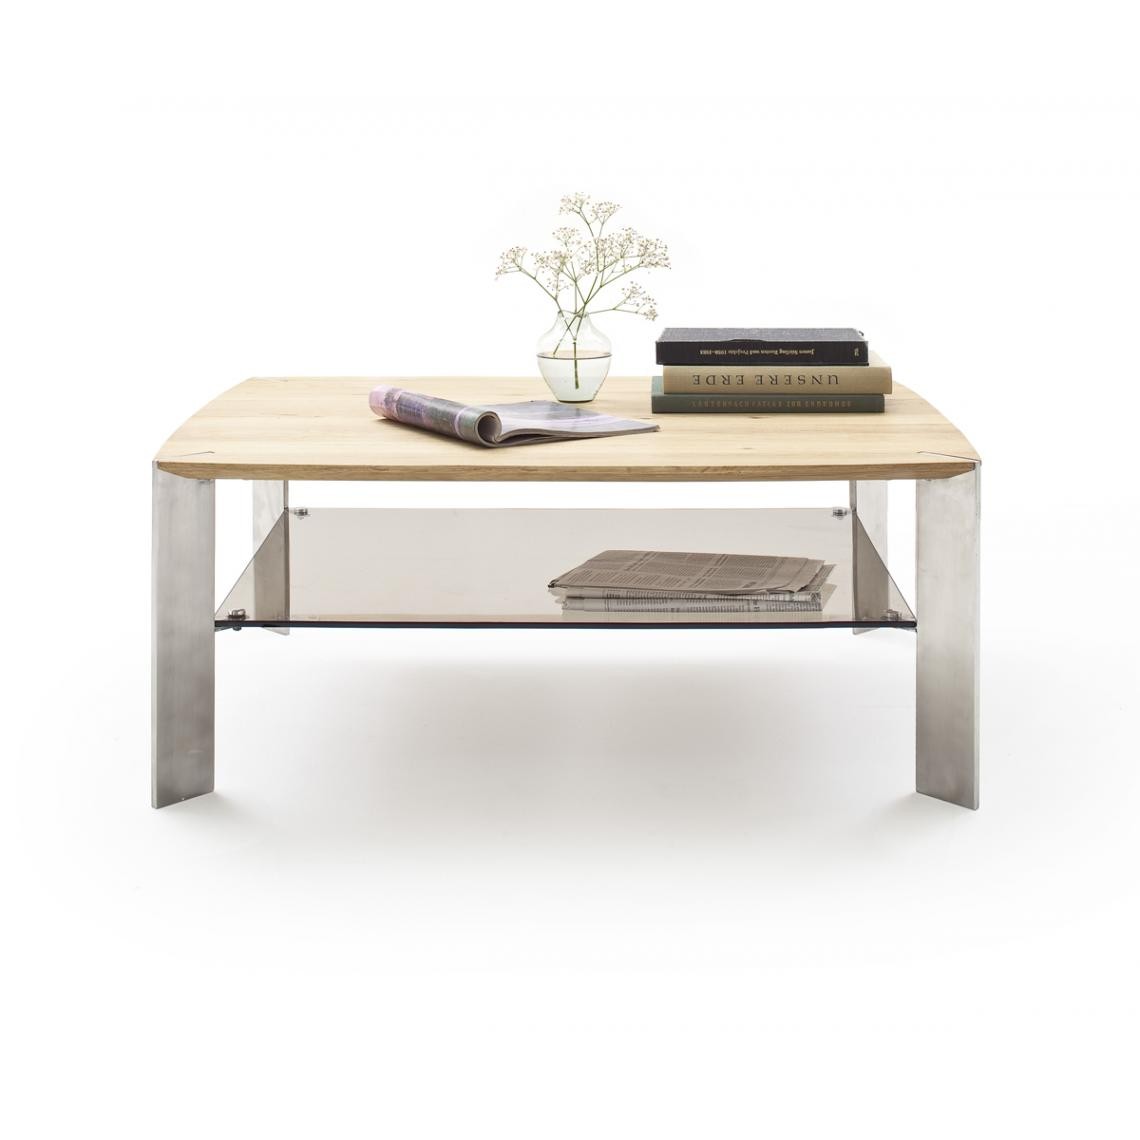 Pegane - Table basse en chêne massif et verre - L120 x H41 x P70 cm - Tables basses